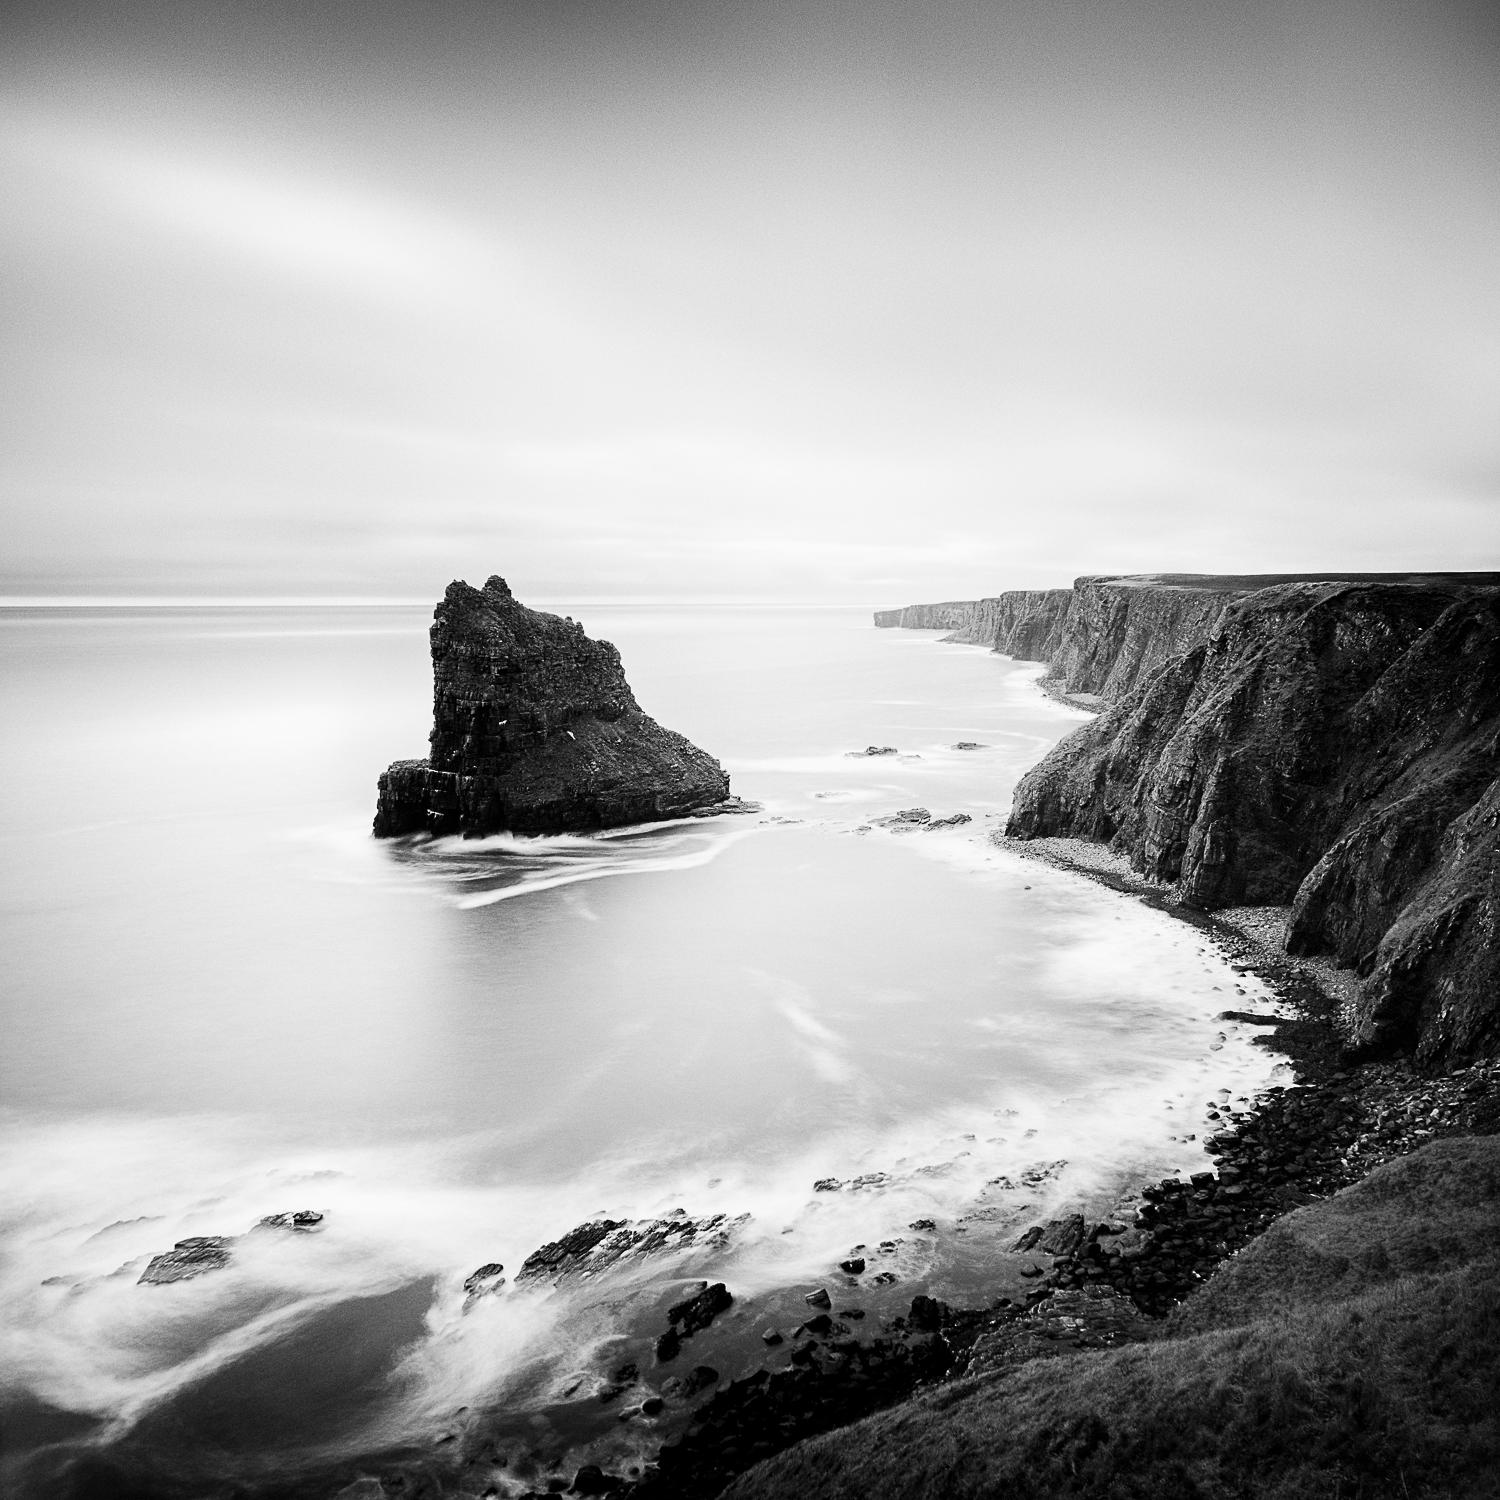 Un moment surréaliste, Cliffs, Rocks, Écosse, photographie d'art en noir et blanc, encadrée - Photograph de Gerald Berghammer